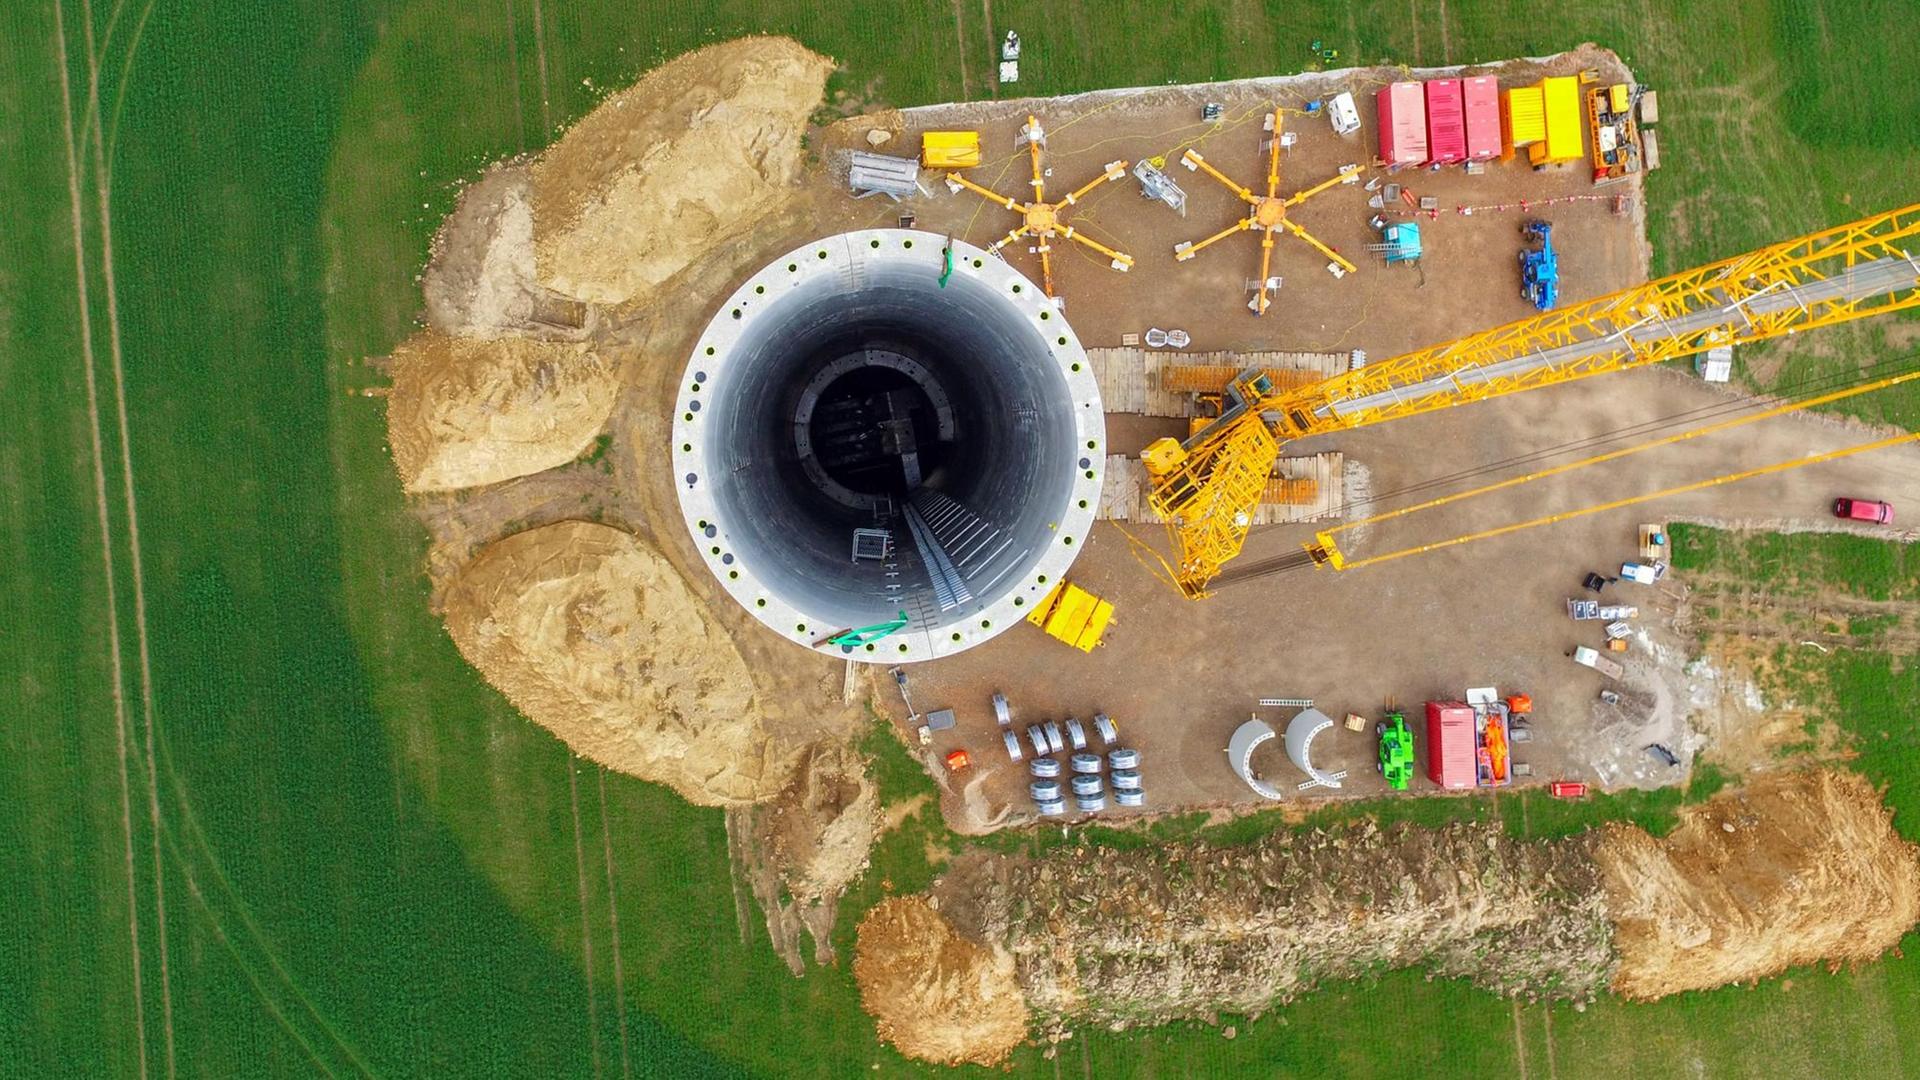 Ein Luftbild einer Drohne zeigt eine eine Windkraftanlage, deren Turbinen durch neue, leistungsstärkere ersetzt werden.